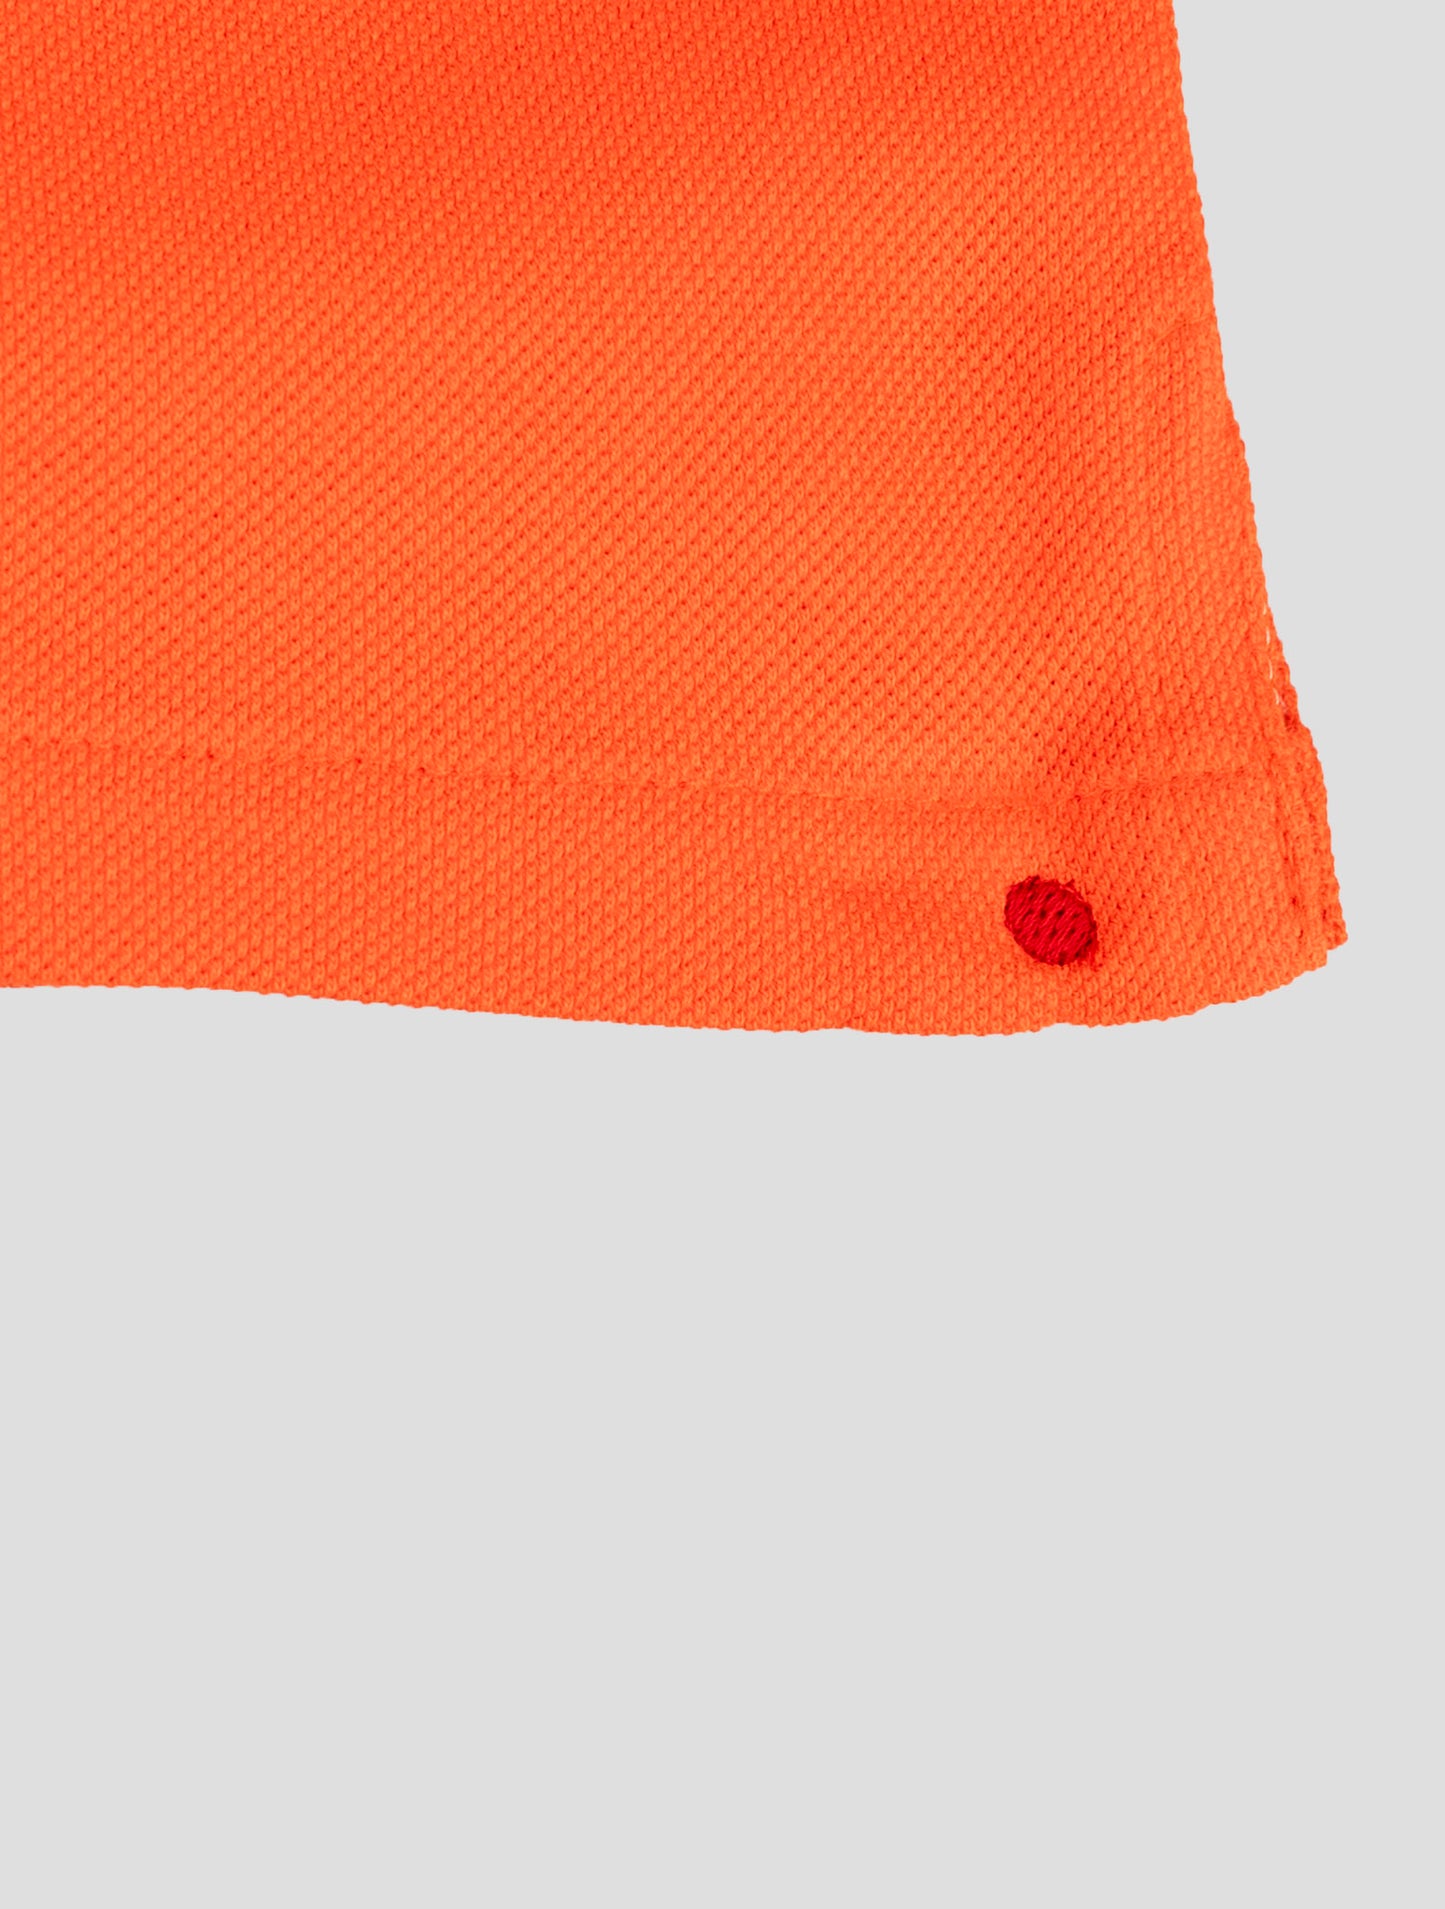 بدلة رياضية مع بنطال قصير برتقالي وأومبي أبيض ومطابق من Kiton